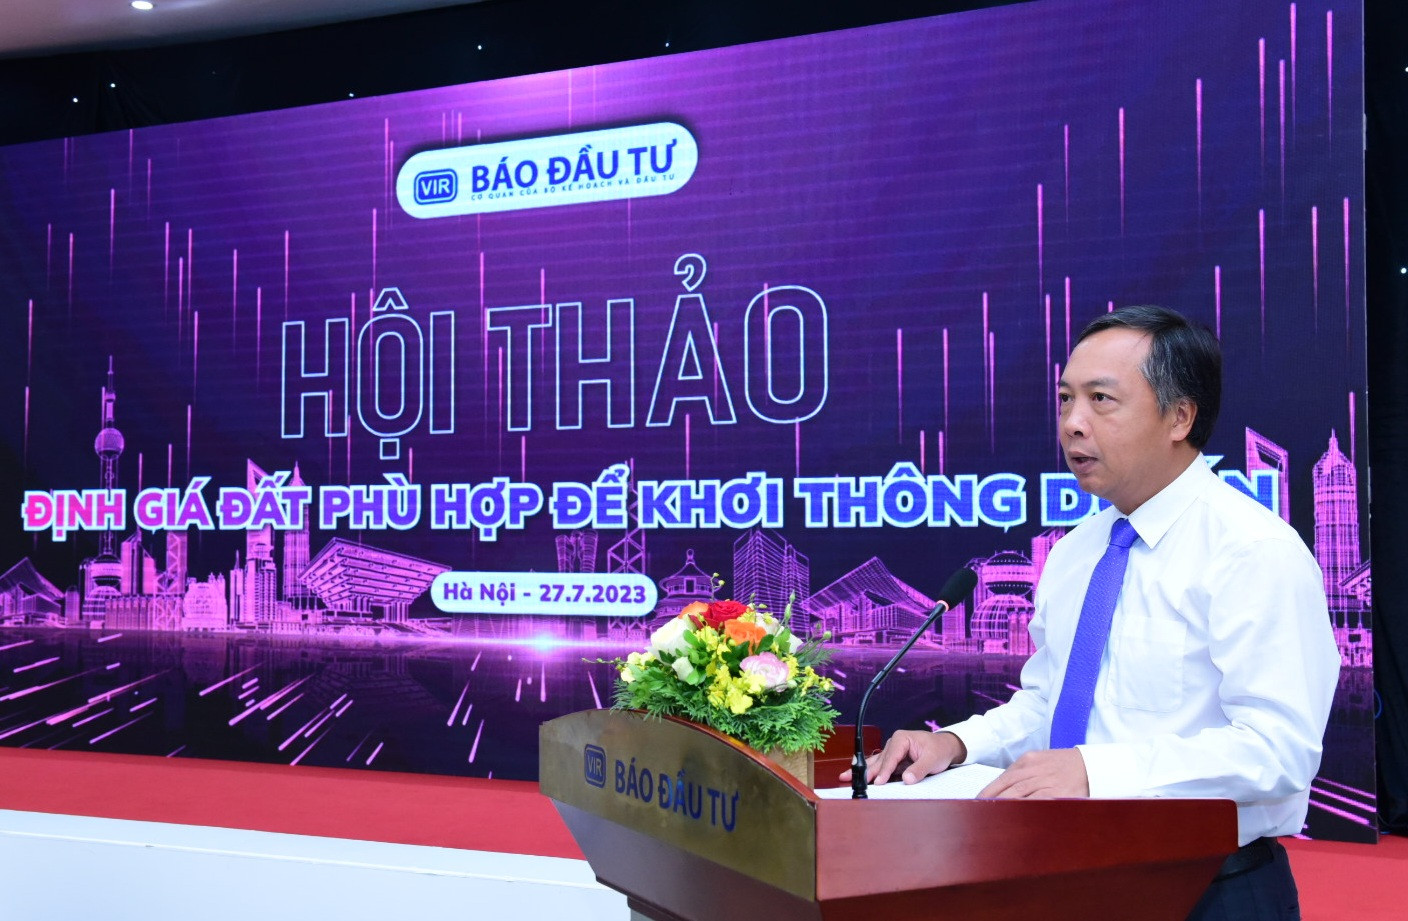 Ông Lê Trọng Minh, Tổng Biên tập Báo Đầu tư phát biểu khai mạc Hội thảo.